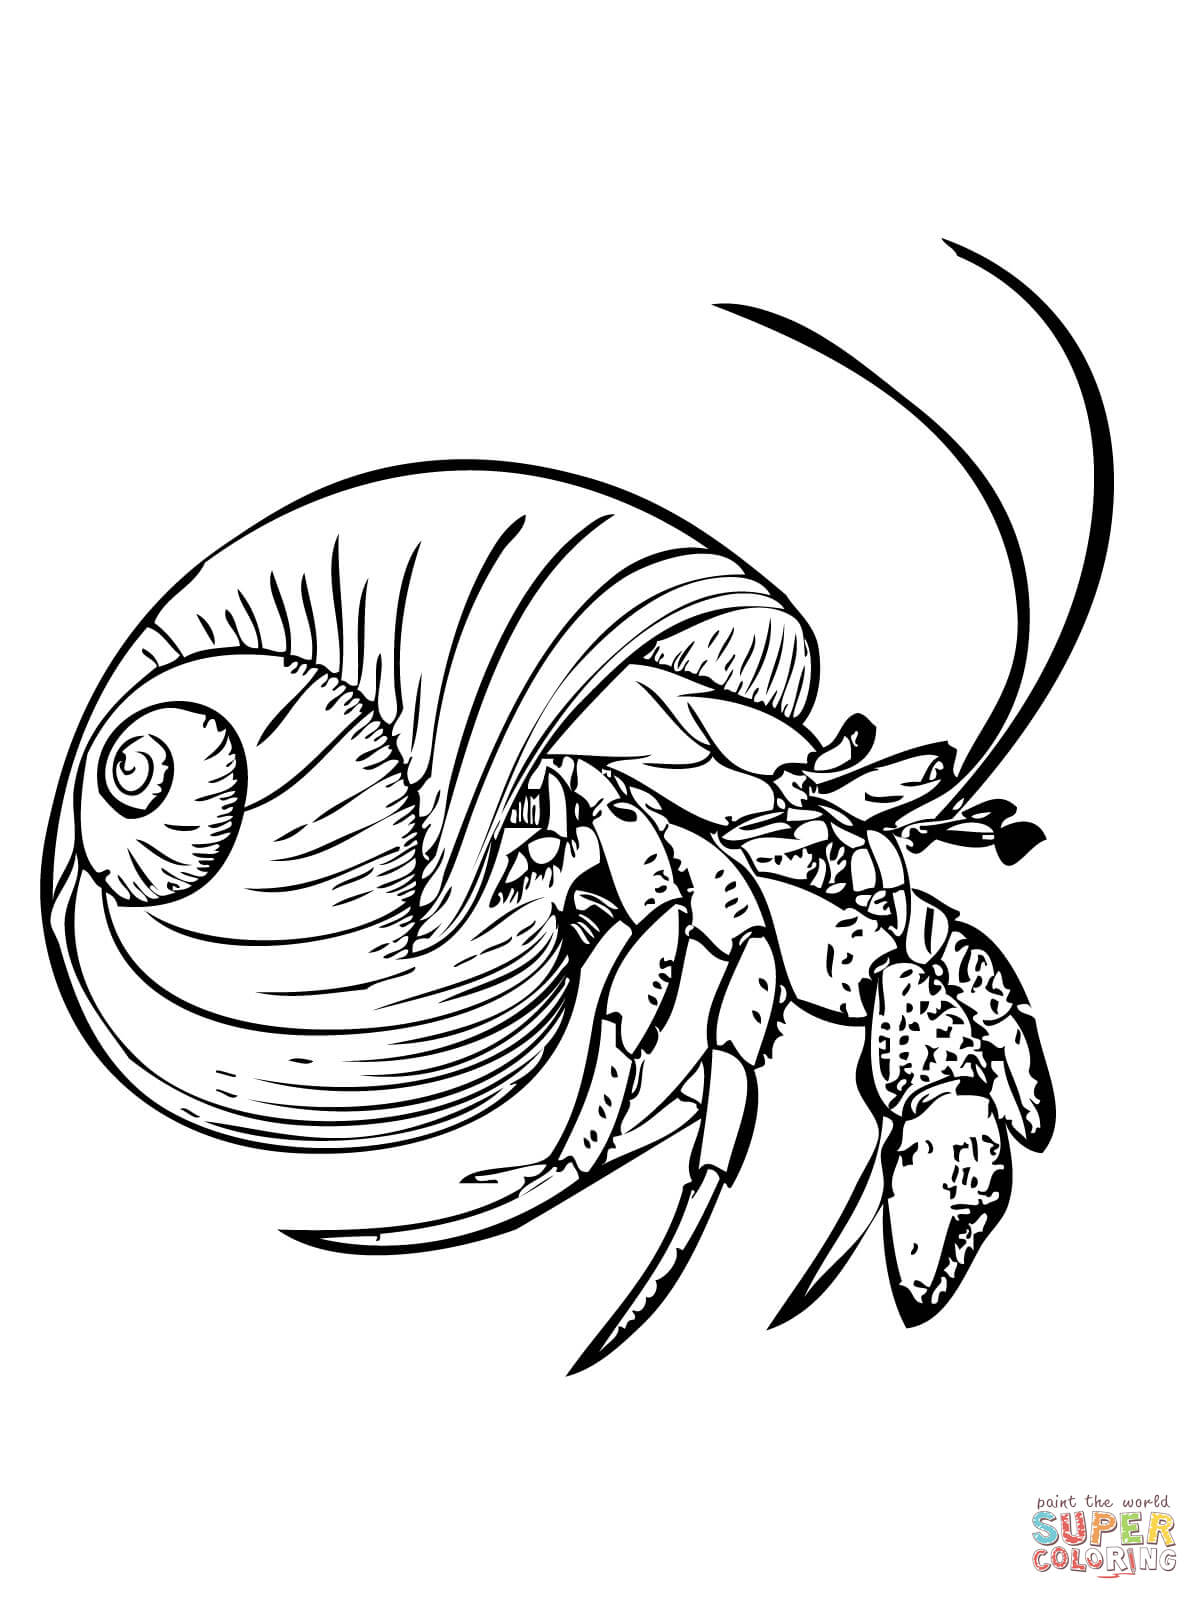 Hermit Crab Image Drawing